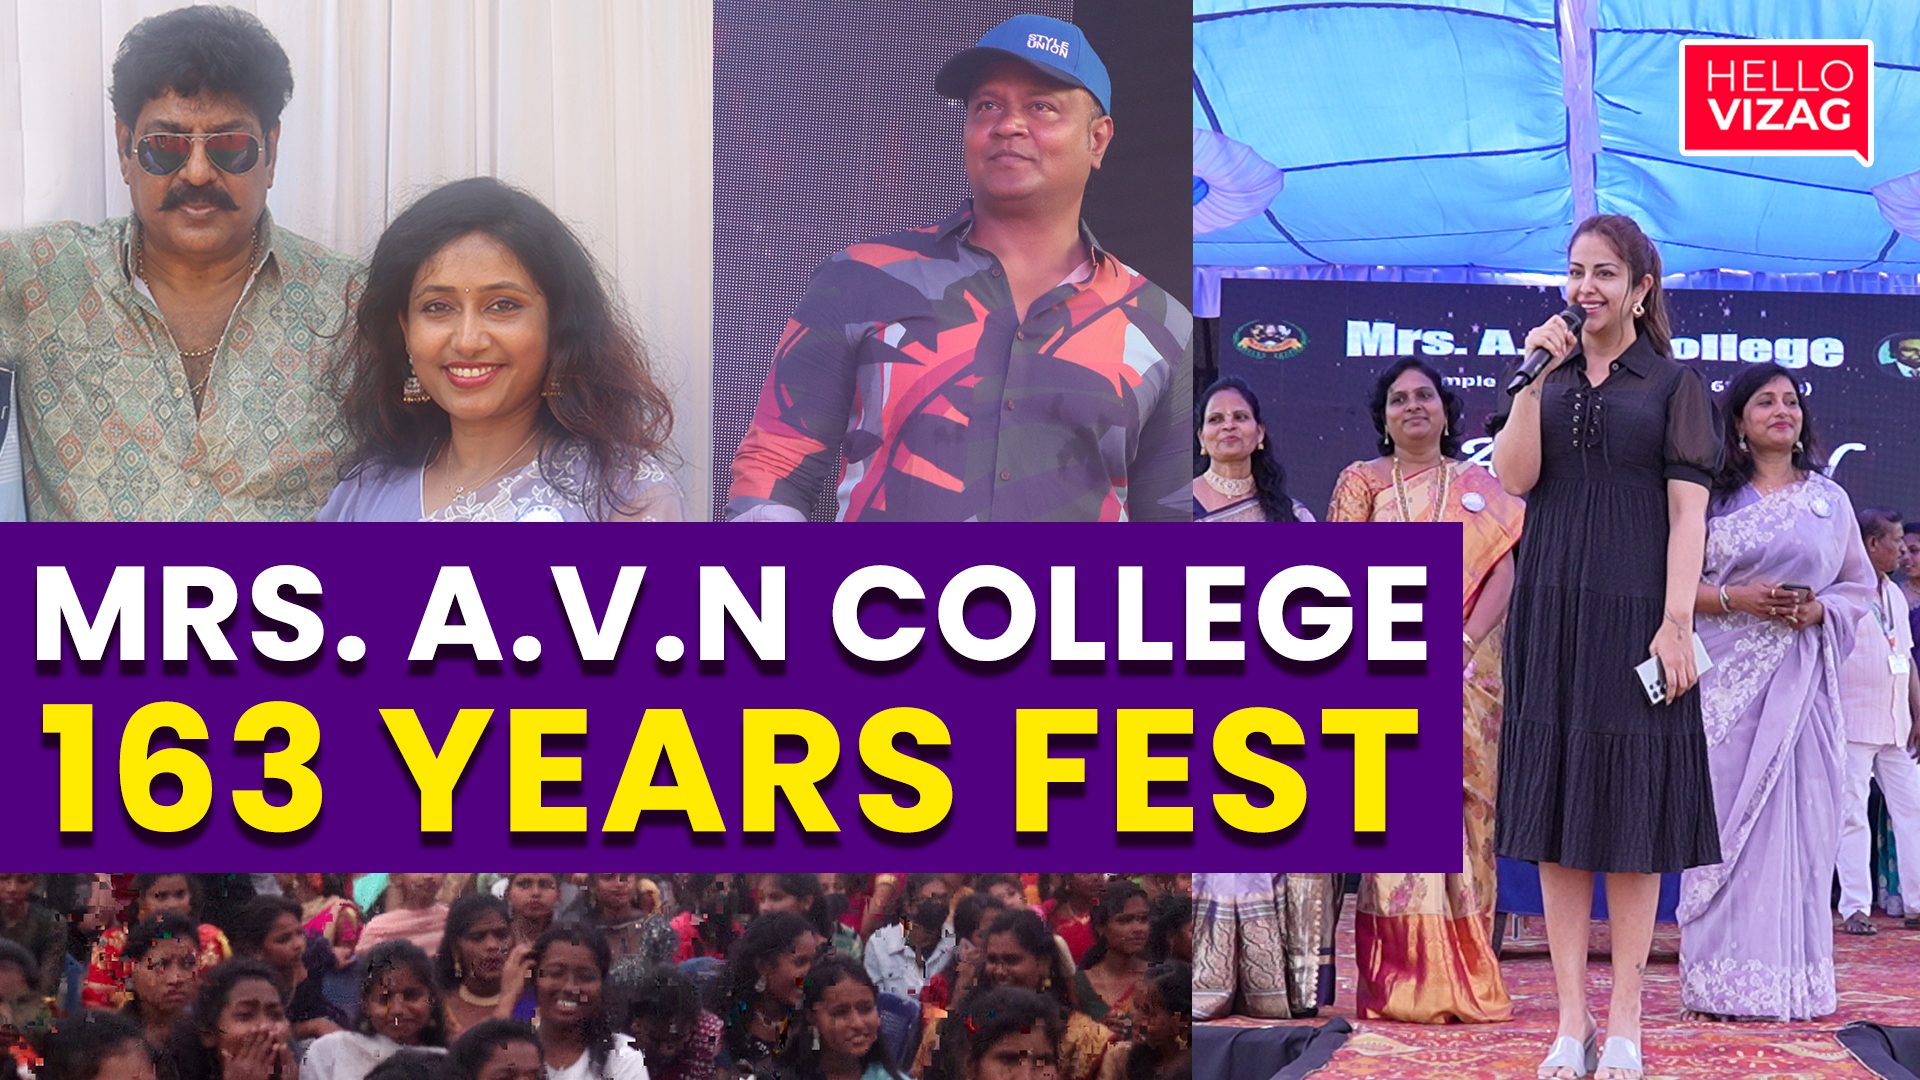 Mrs. A.V.N College | 163 Years Fest | Aahwan Celebrations | Avika Gor | Bullet Bhaskar | Hello Vizag